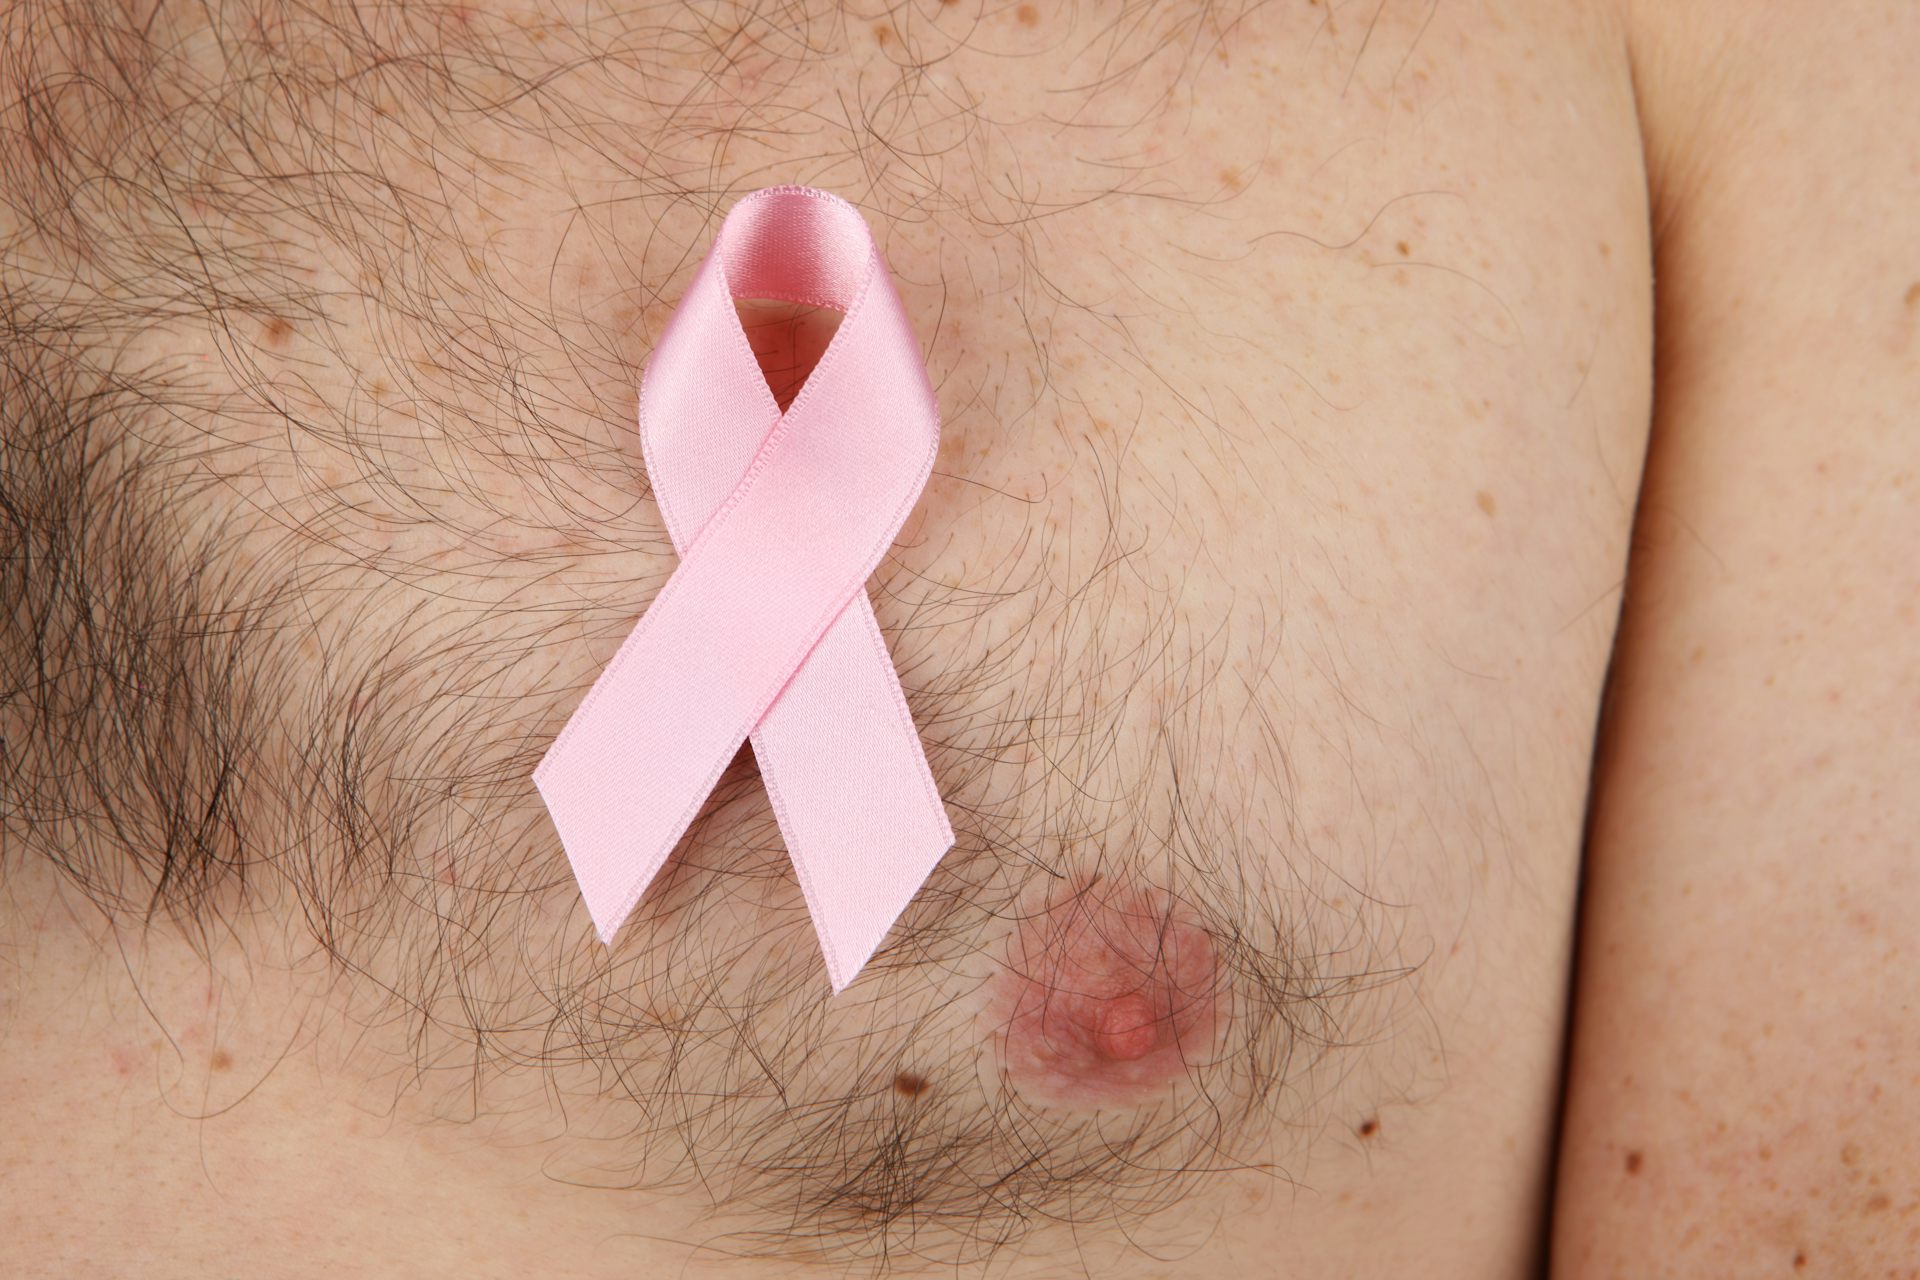 лечения груди у мужчин народными средствами фото 119